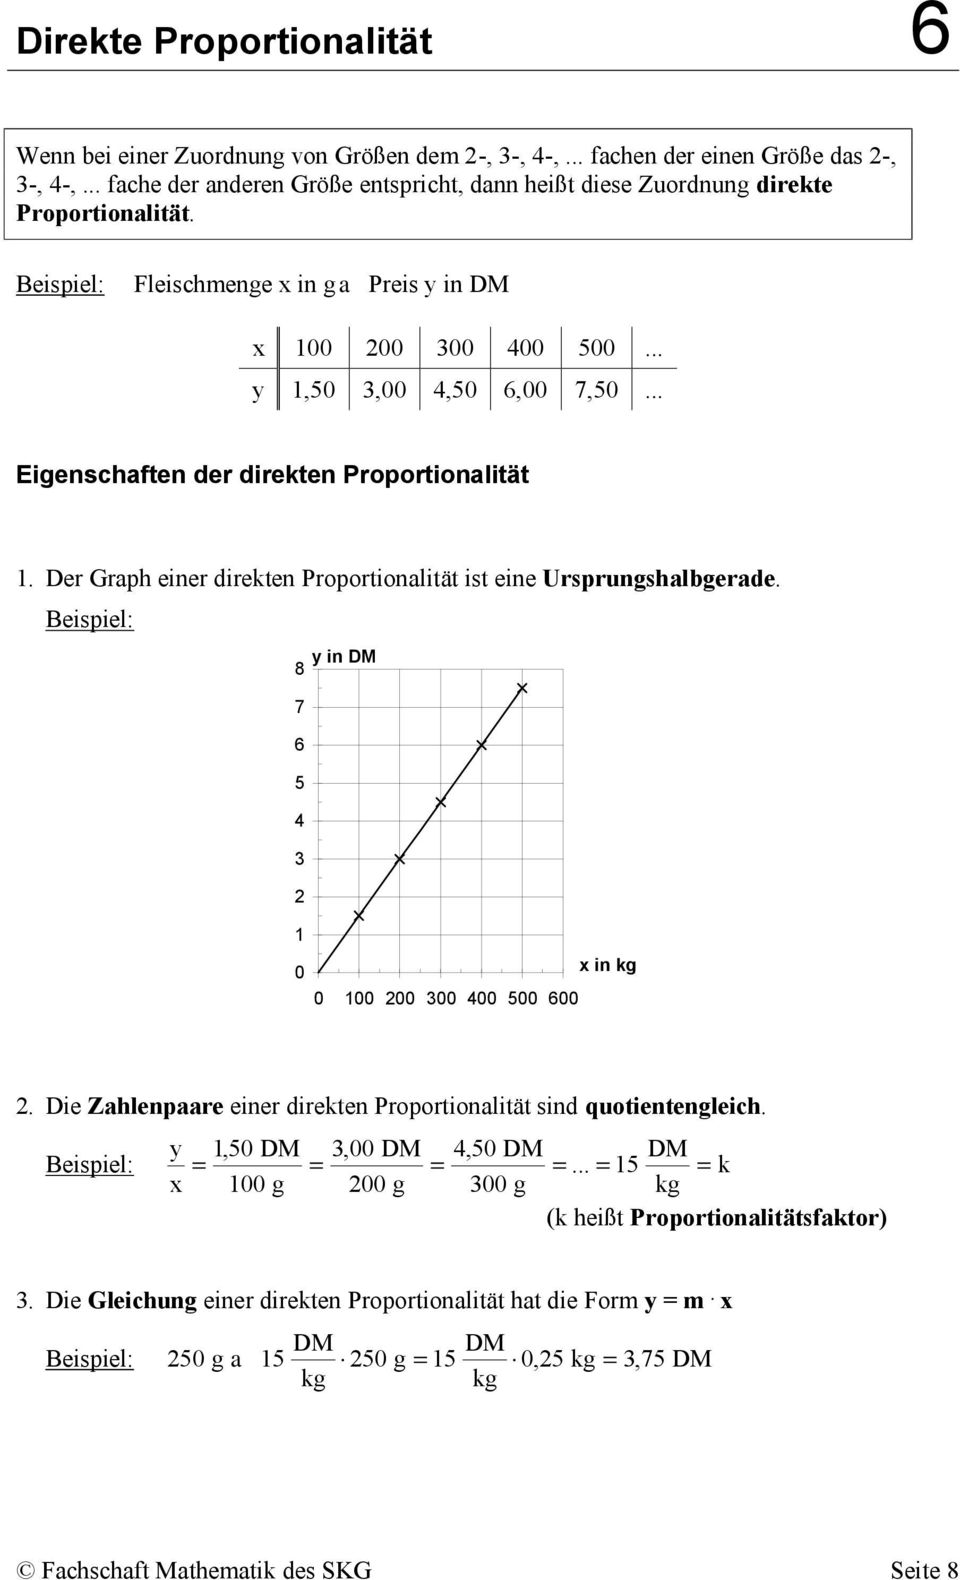 .. Eigenschaften der direkten Proportionalität. Der Graph einer direkten Proportionalität ist eine Ursprungshalbgerade. y in DM 0 x in kg 0 00 00 00 00 00 00.